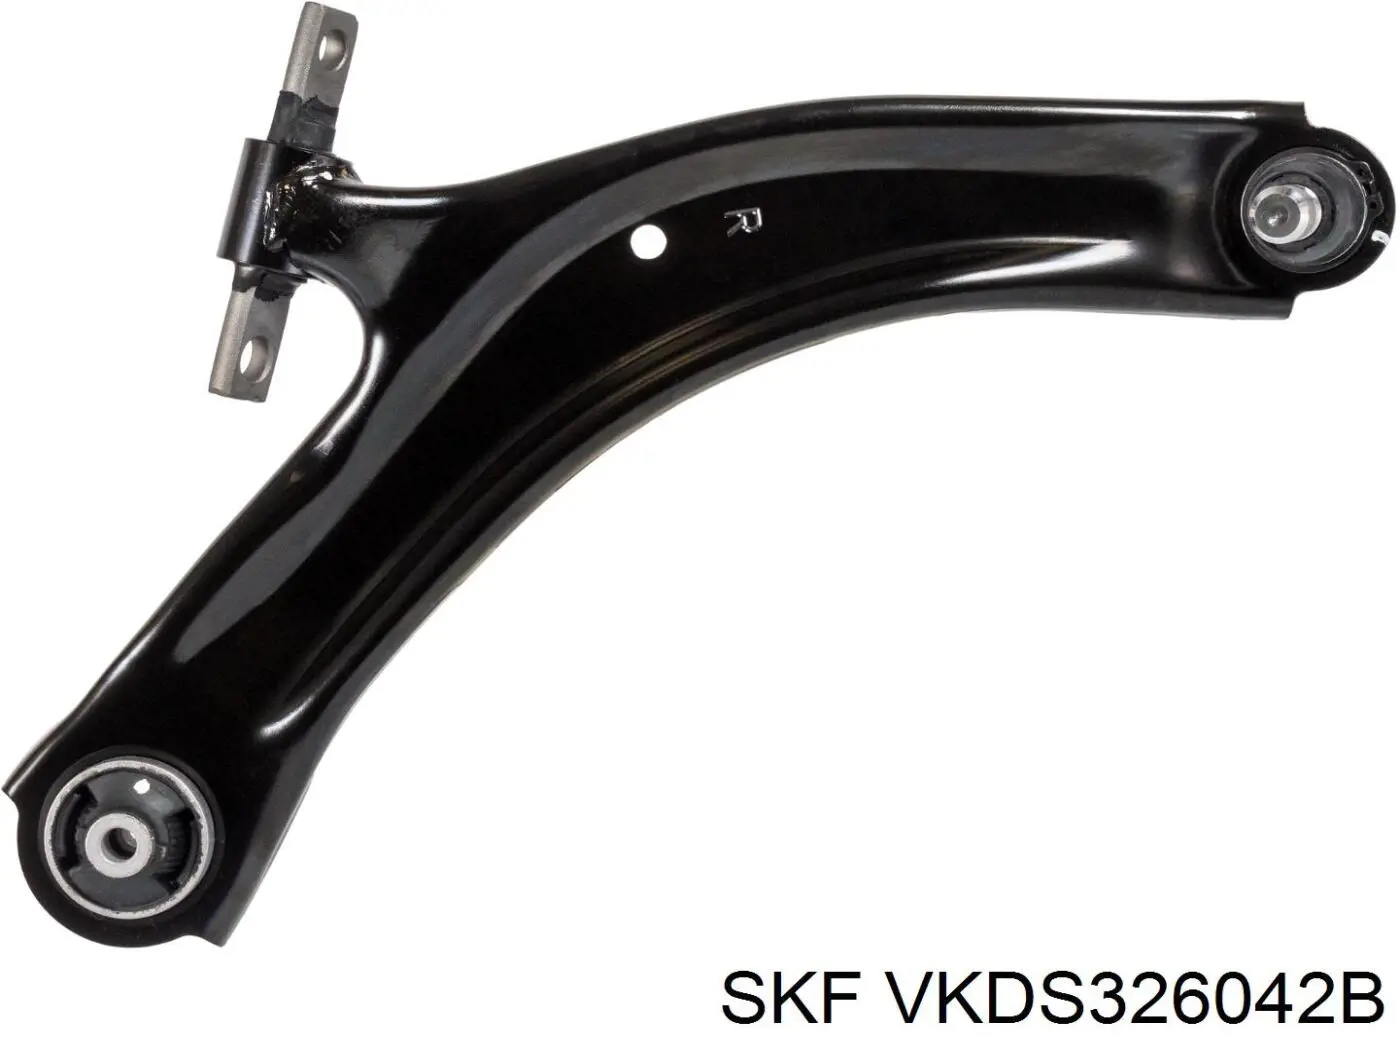 VKDS326042B SKF barra oscilante, suspensión de ruedas delantera, inferior derecha